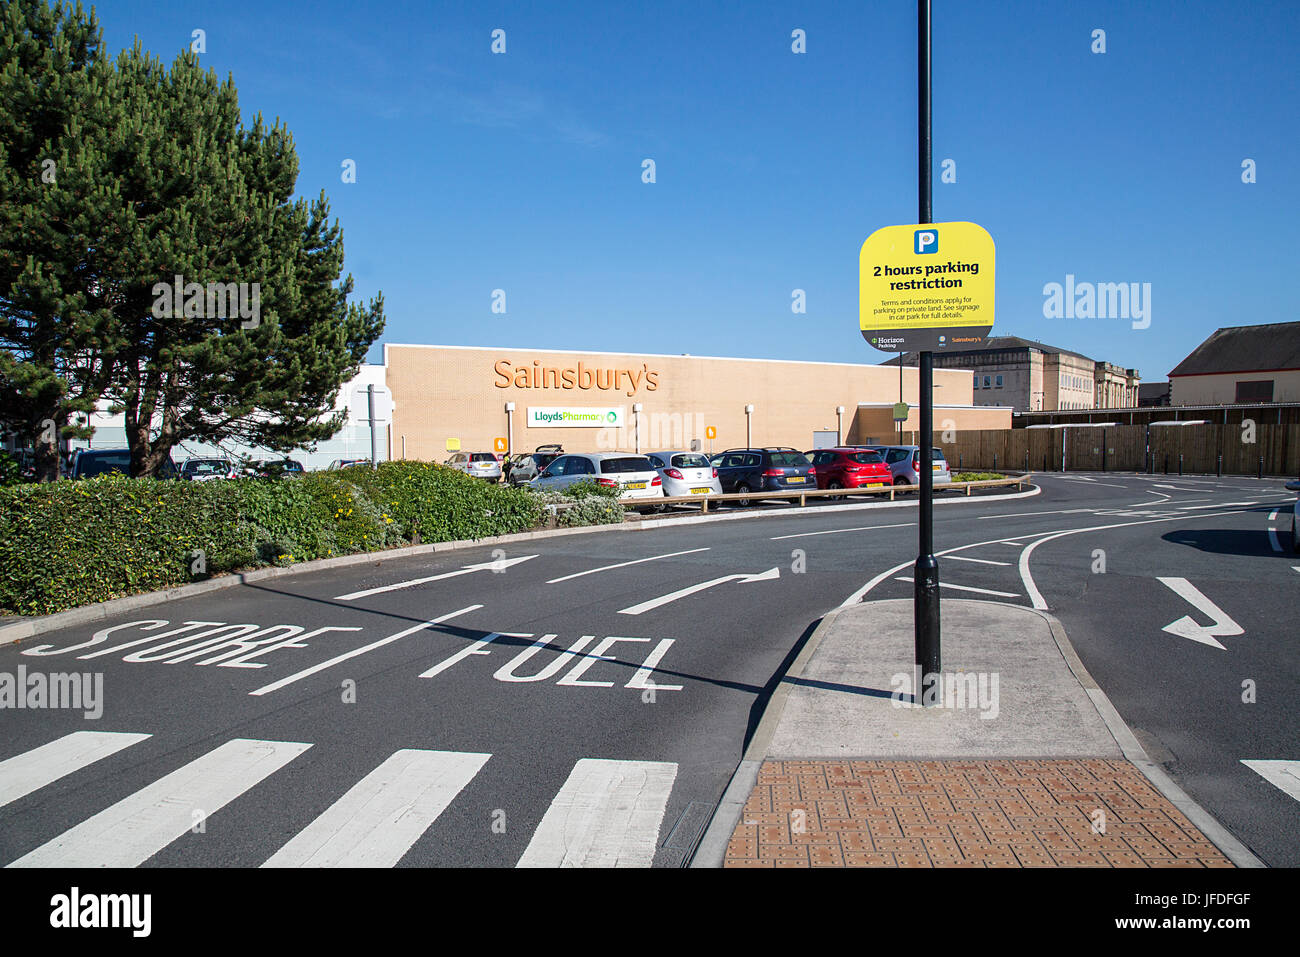 Sainsbury's Supermarkt Straße Eingang führt zu den Store oder eine Tankstelle. Sainsbury's sind eine britische besessene Supermarktkette. Stockfoto